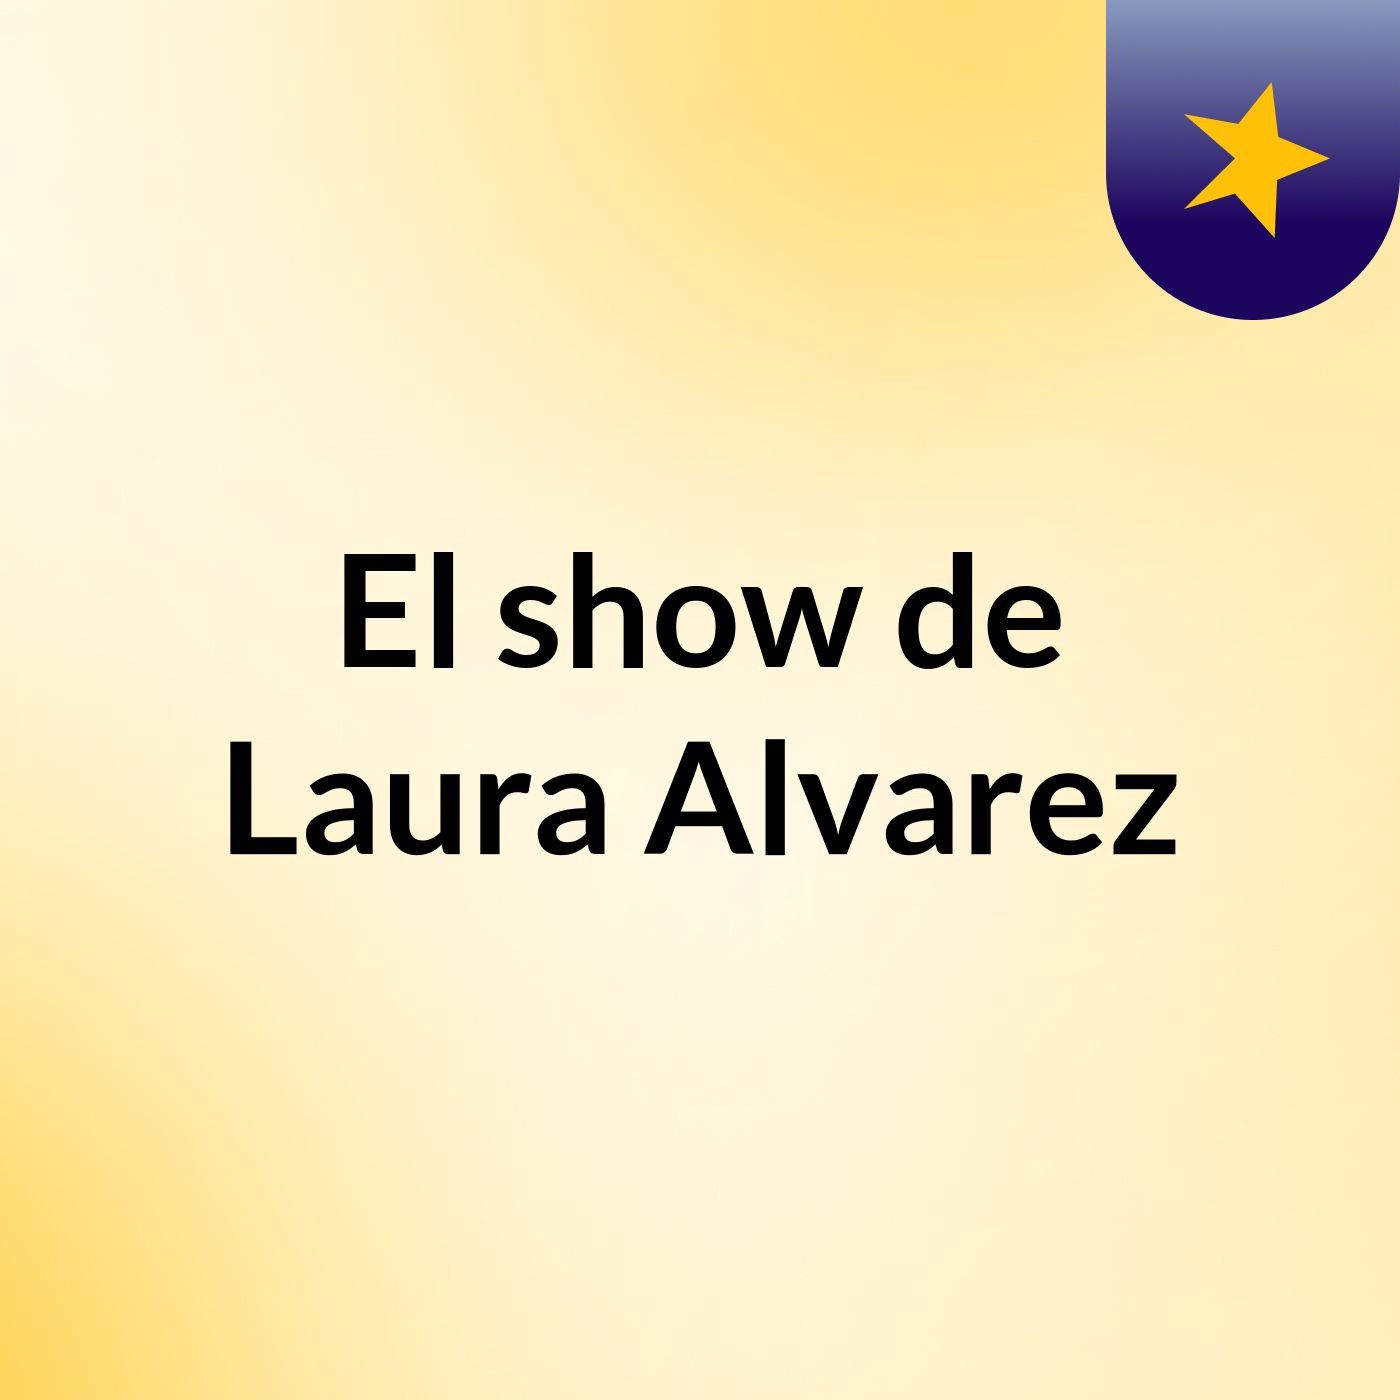 El show de Laura Alvarez